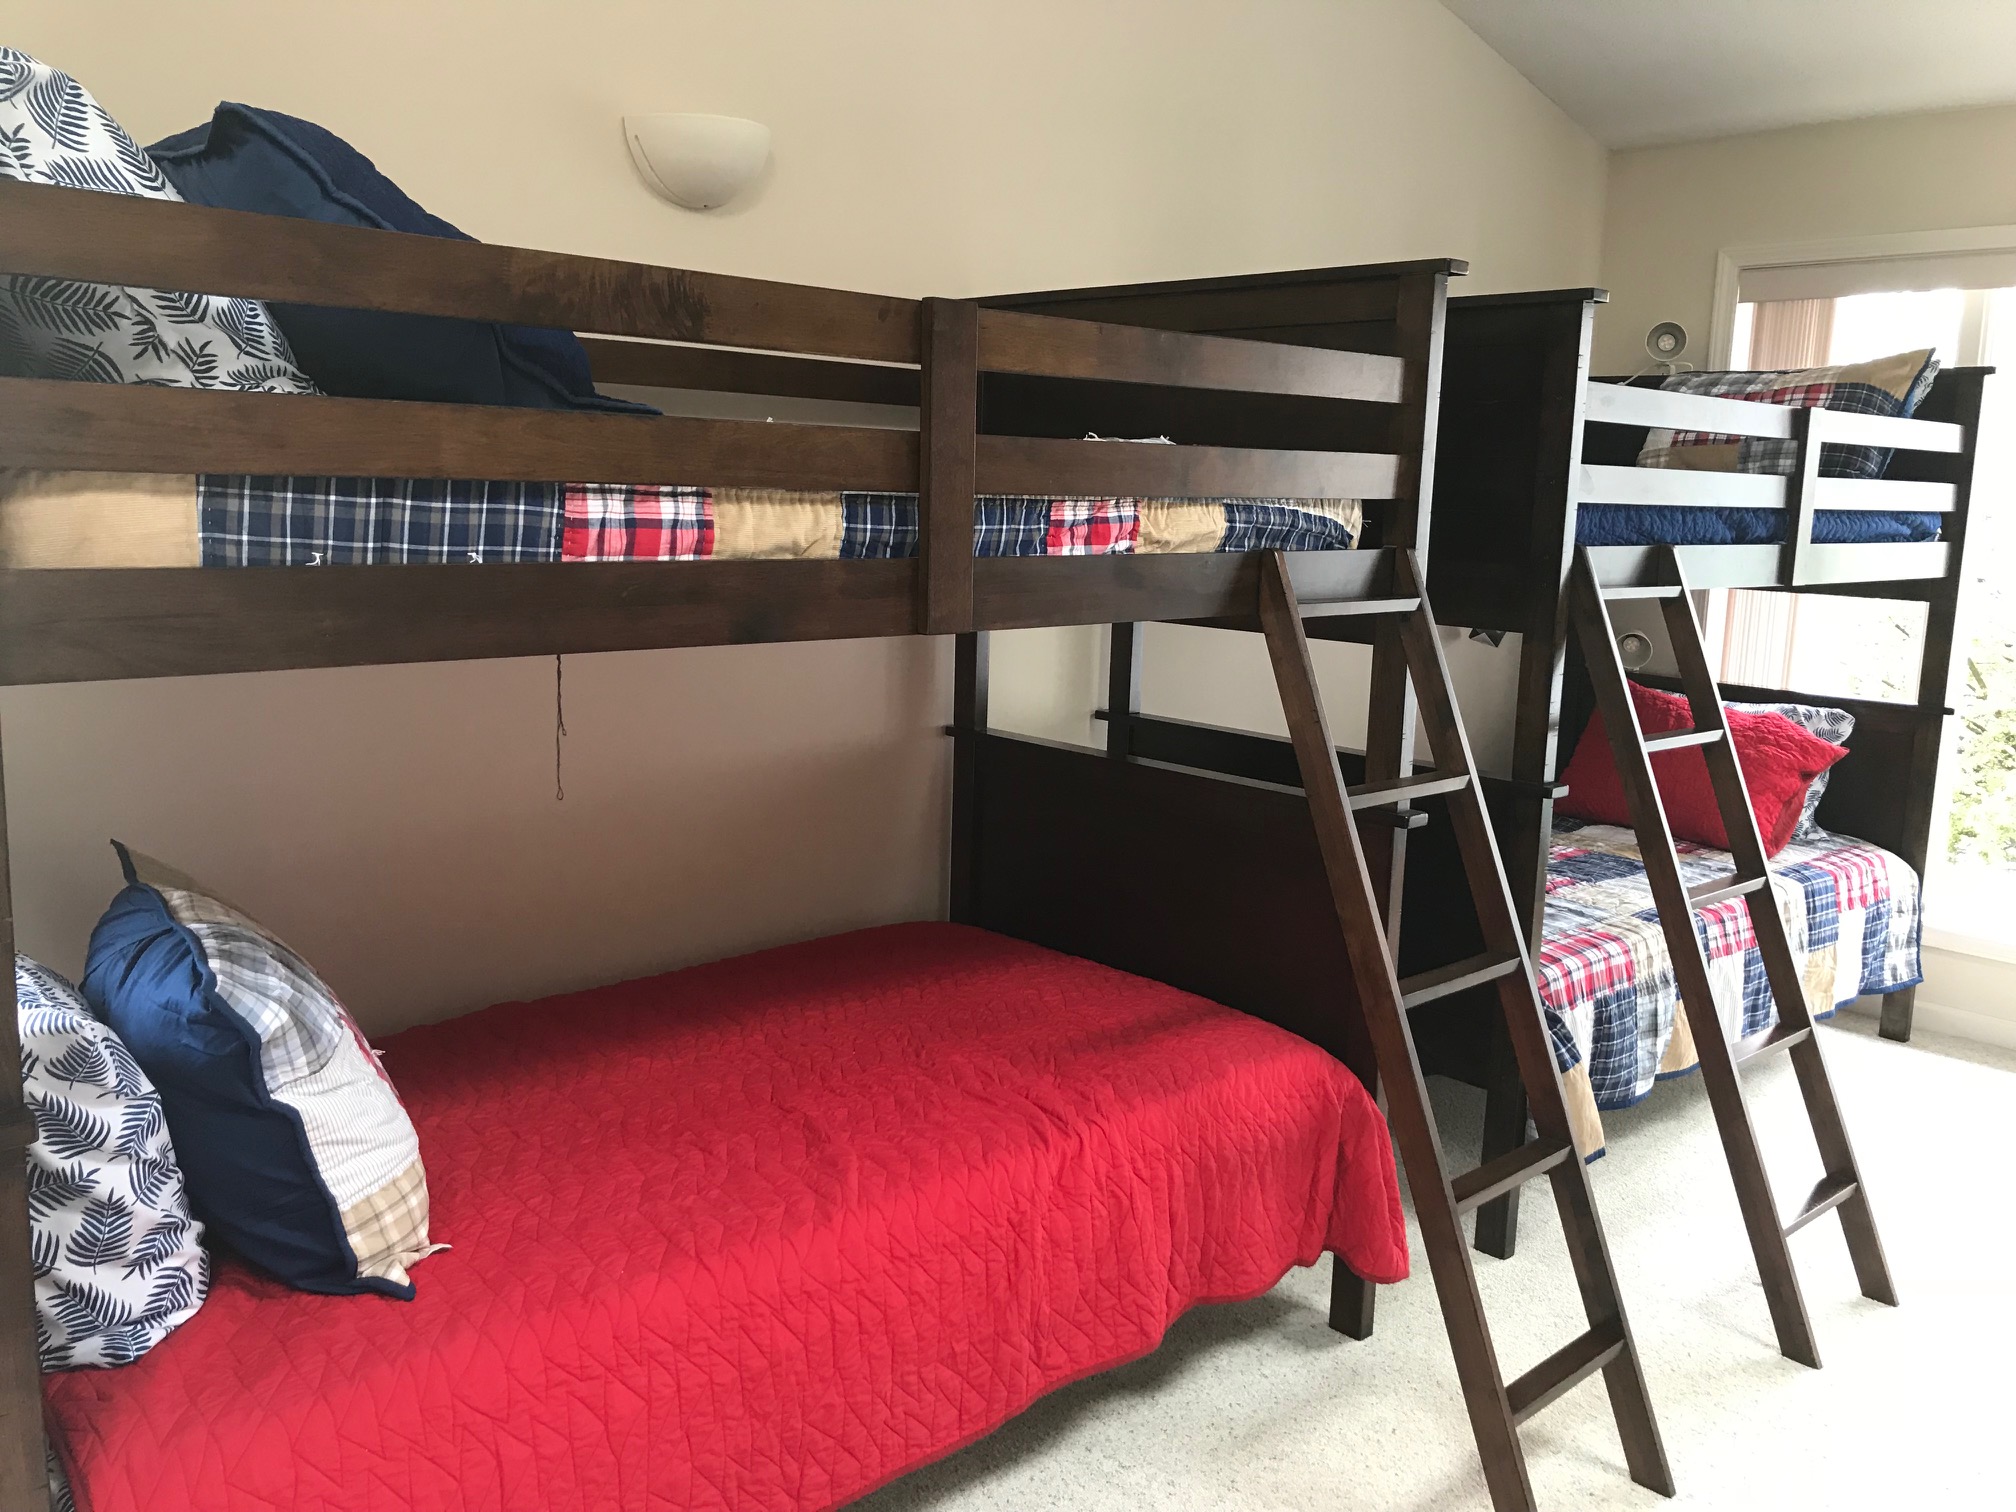 hideaway bunk beds